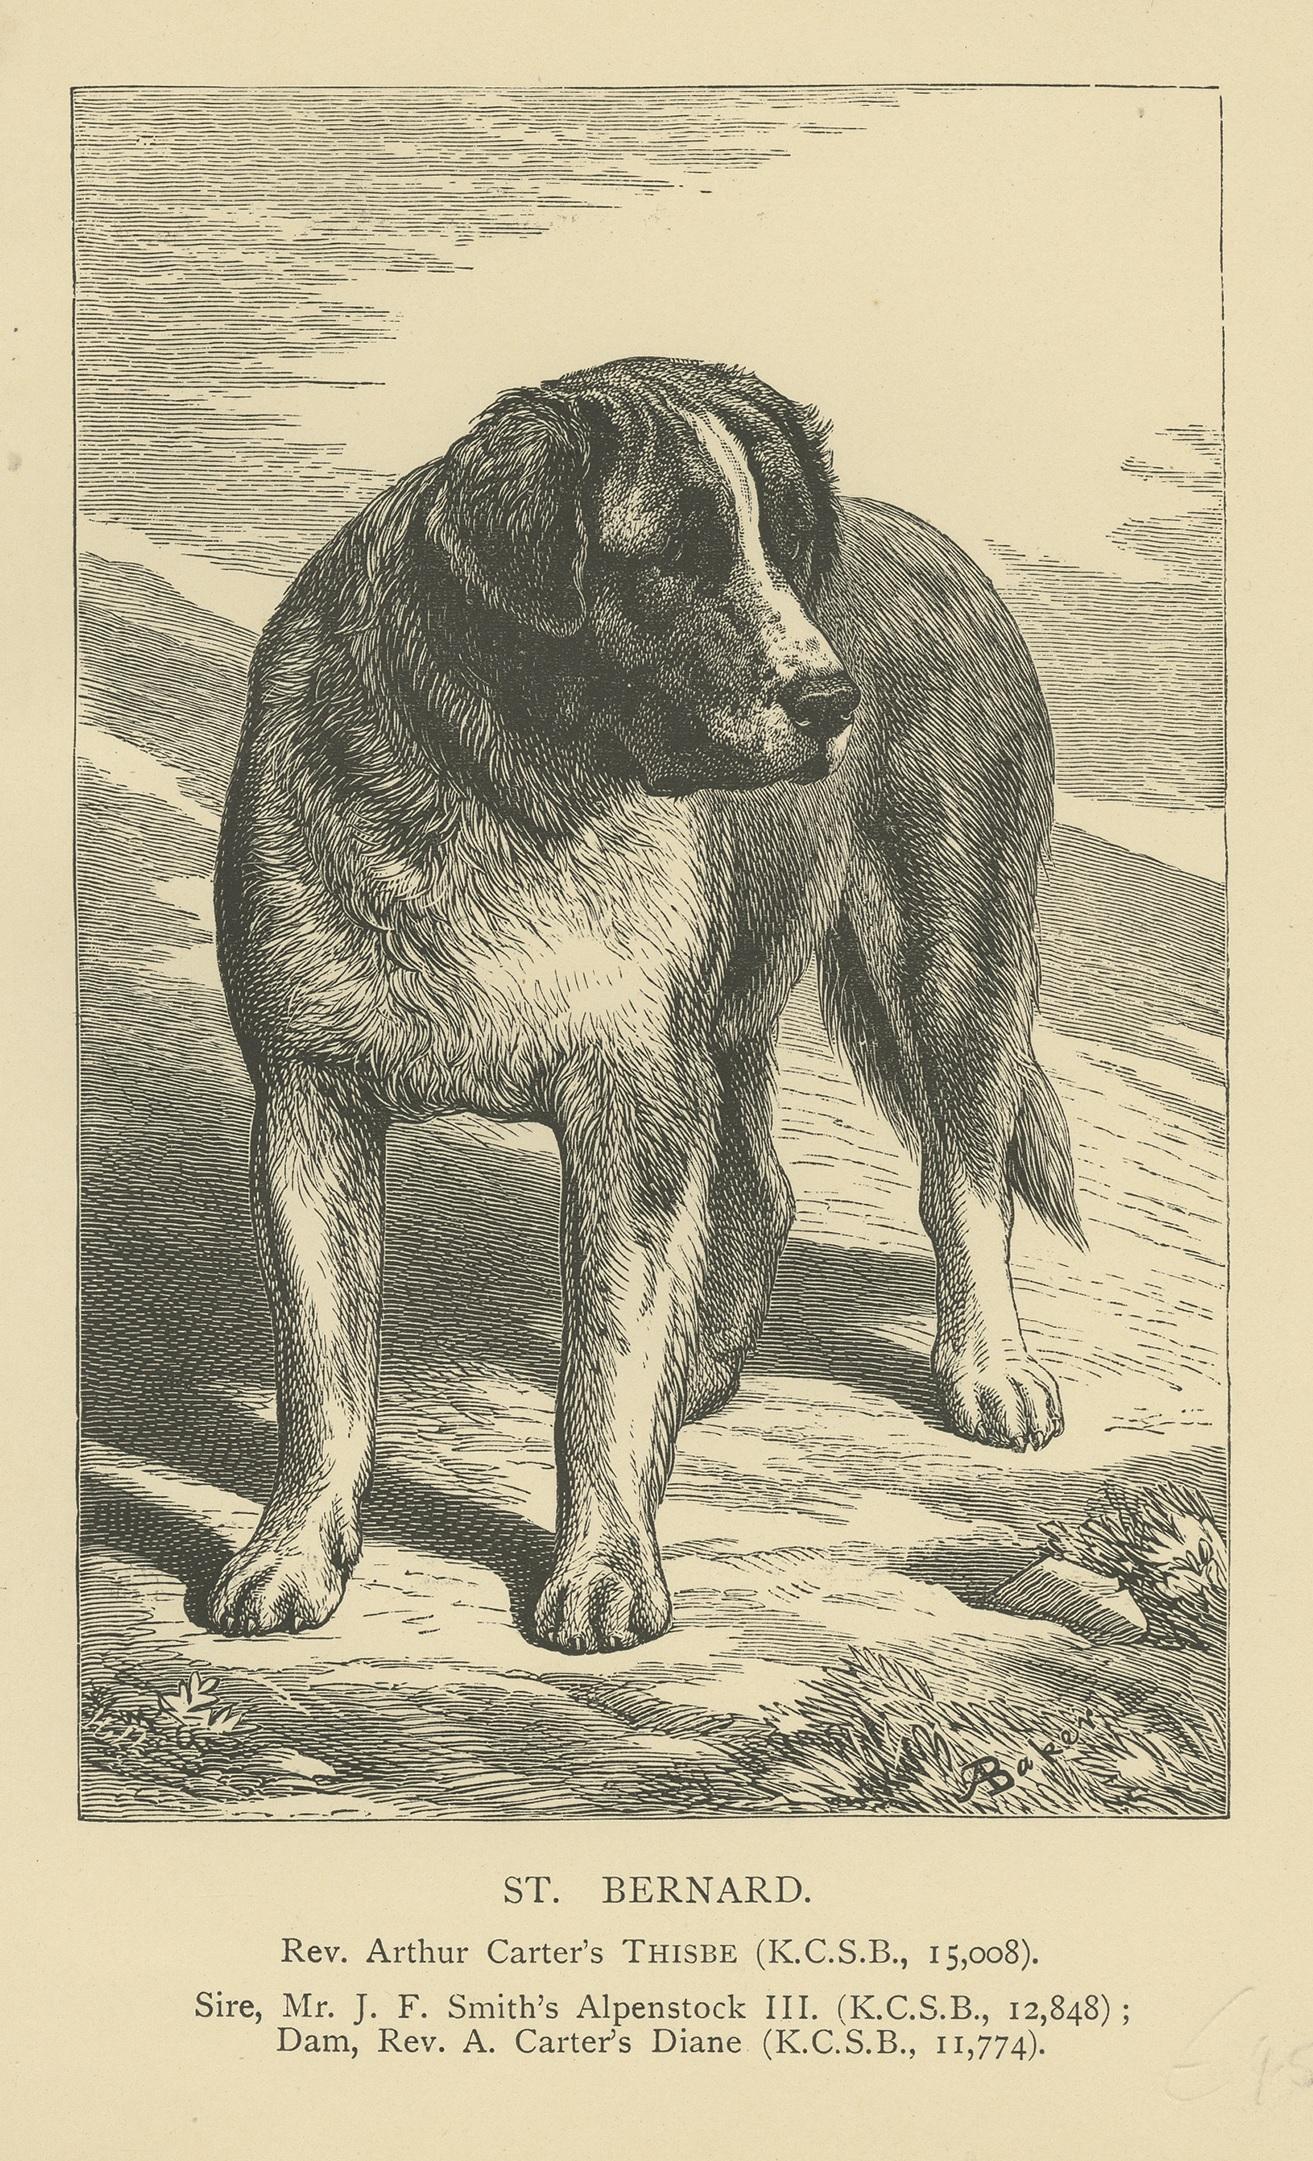 Antiker Druck mit dem Titel 'St. Bernard'. Alter Druck des Bernhardinerhundes. Veröffentlicht um 1900.